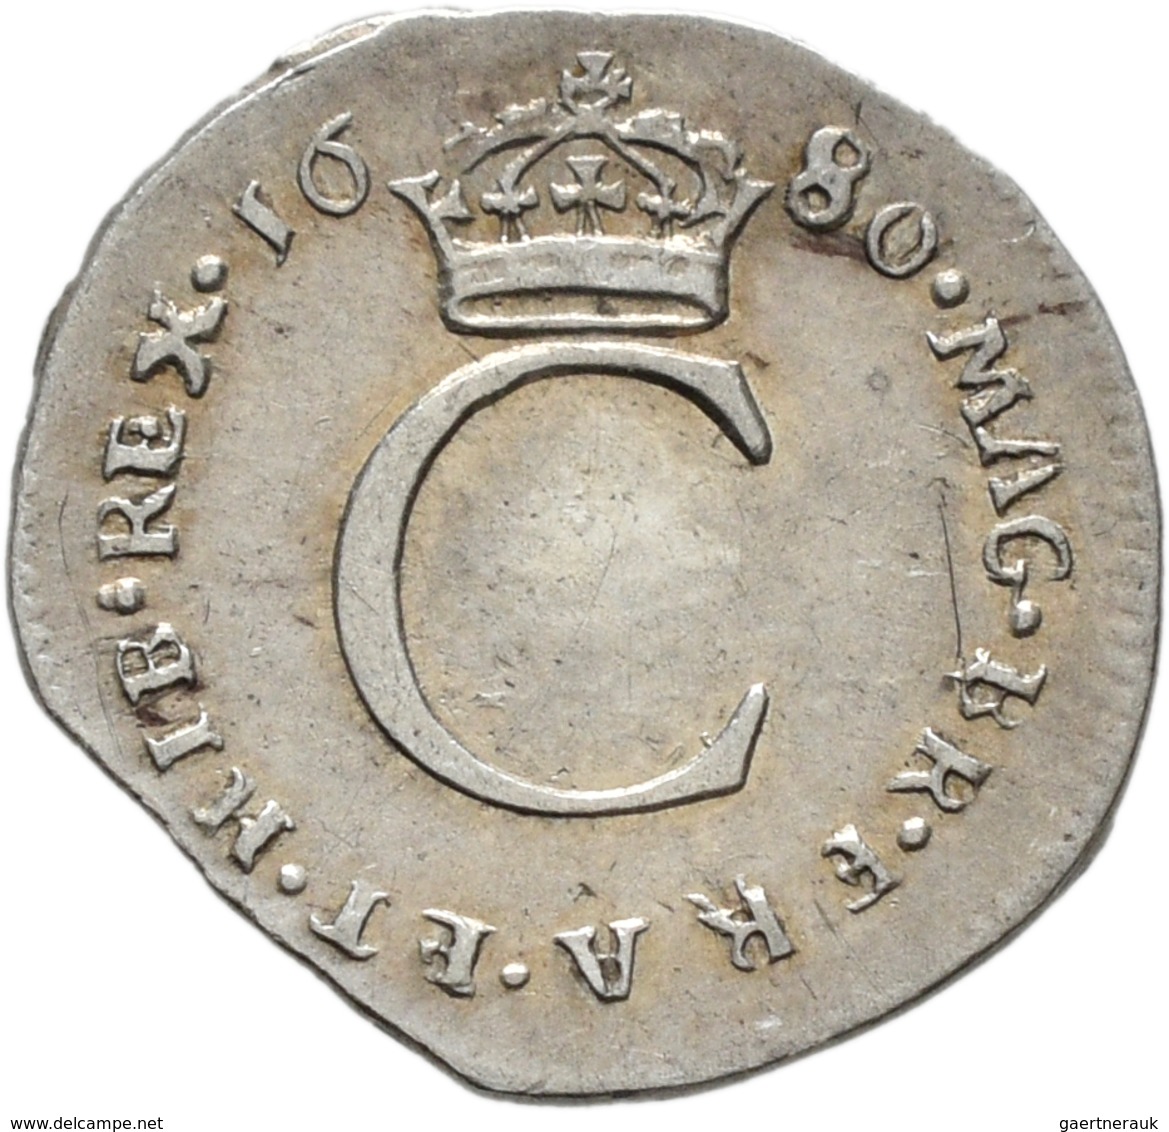 Großbritannien: Charles II. 1660-1685: Maundy Set 1,2,3,4 Pence 1680, sehr schön, sehr schön-vorzügl